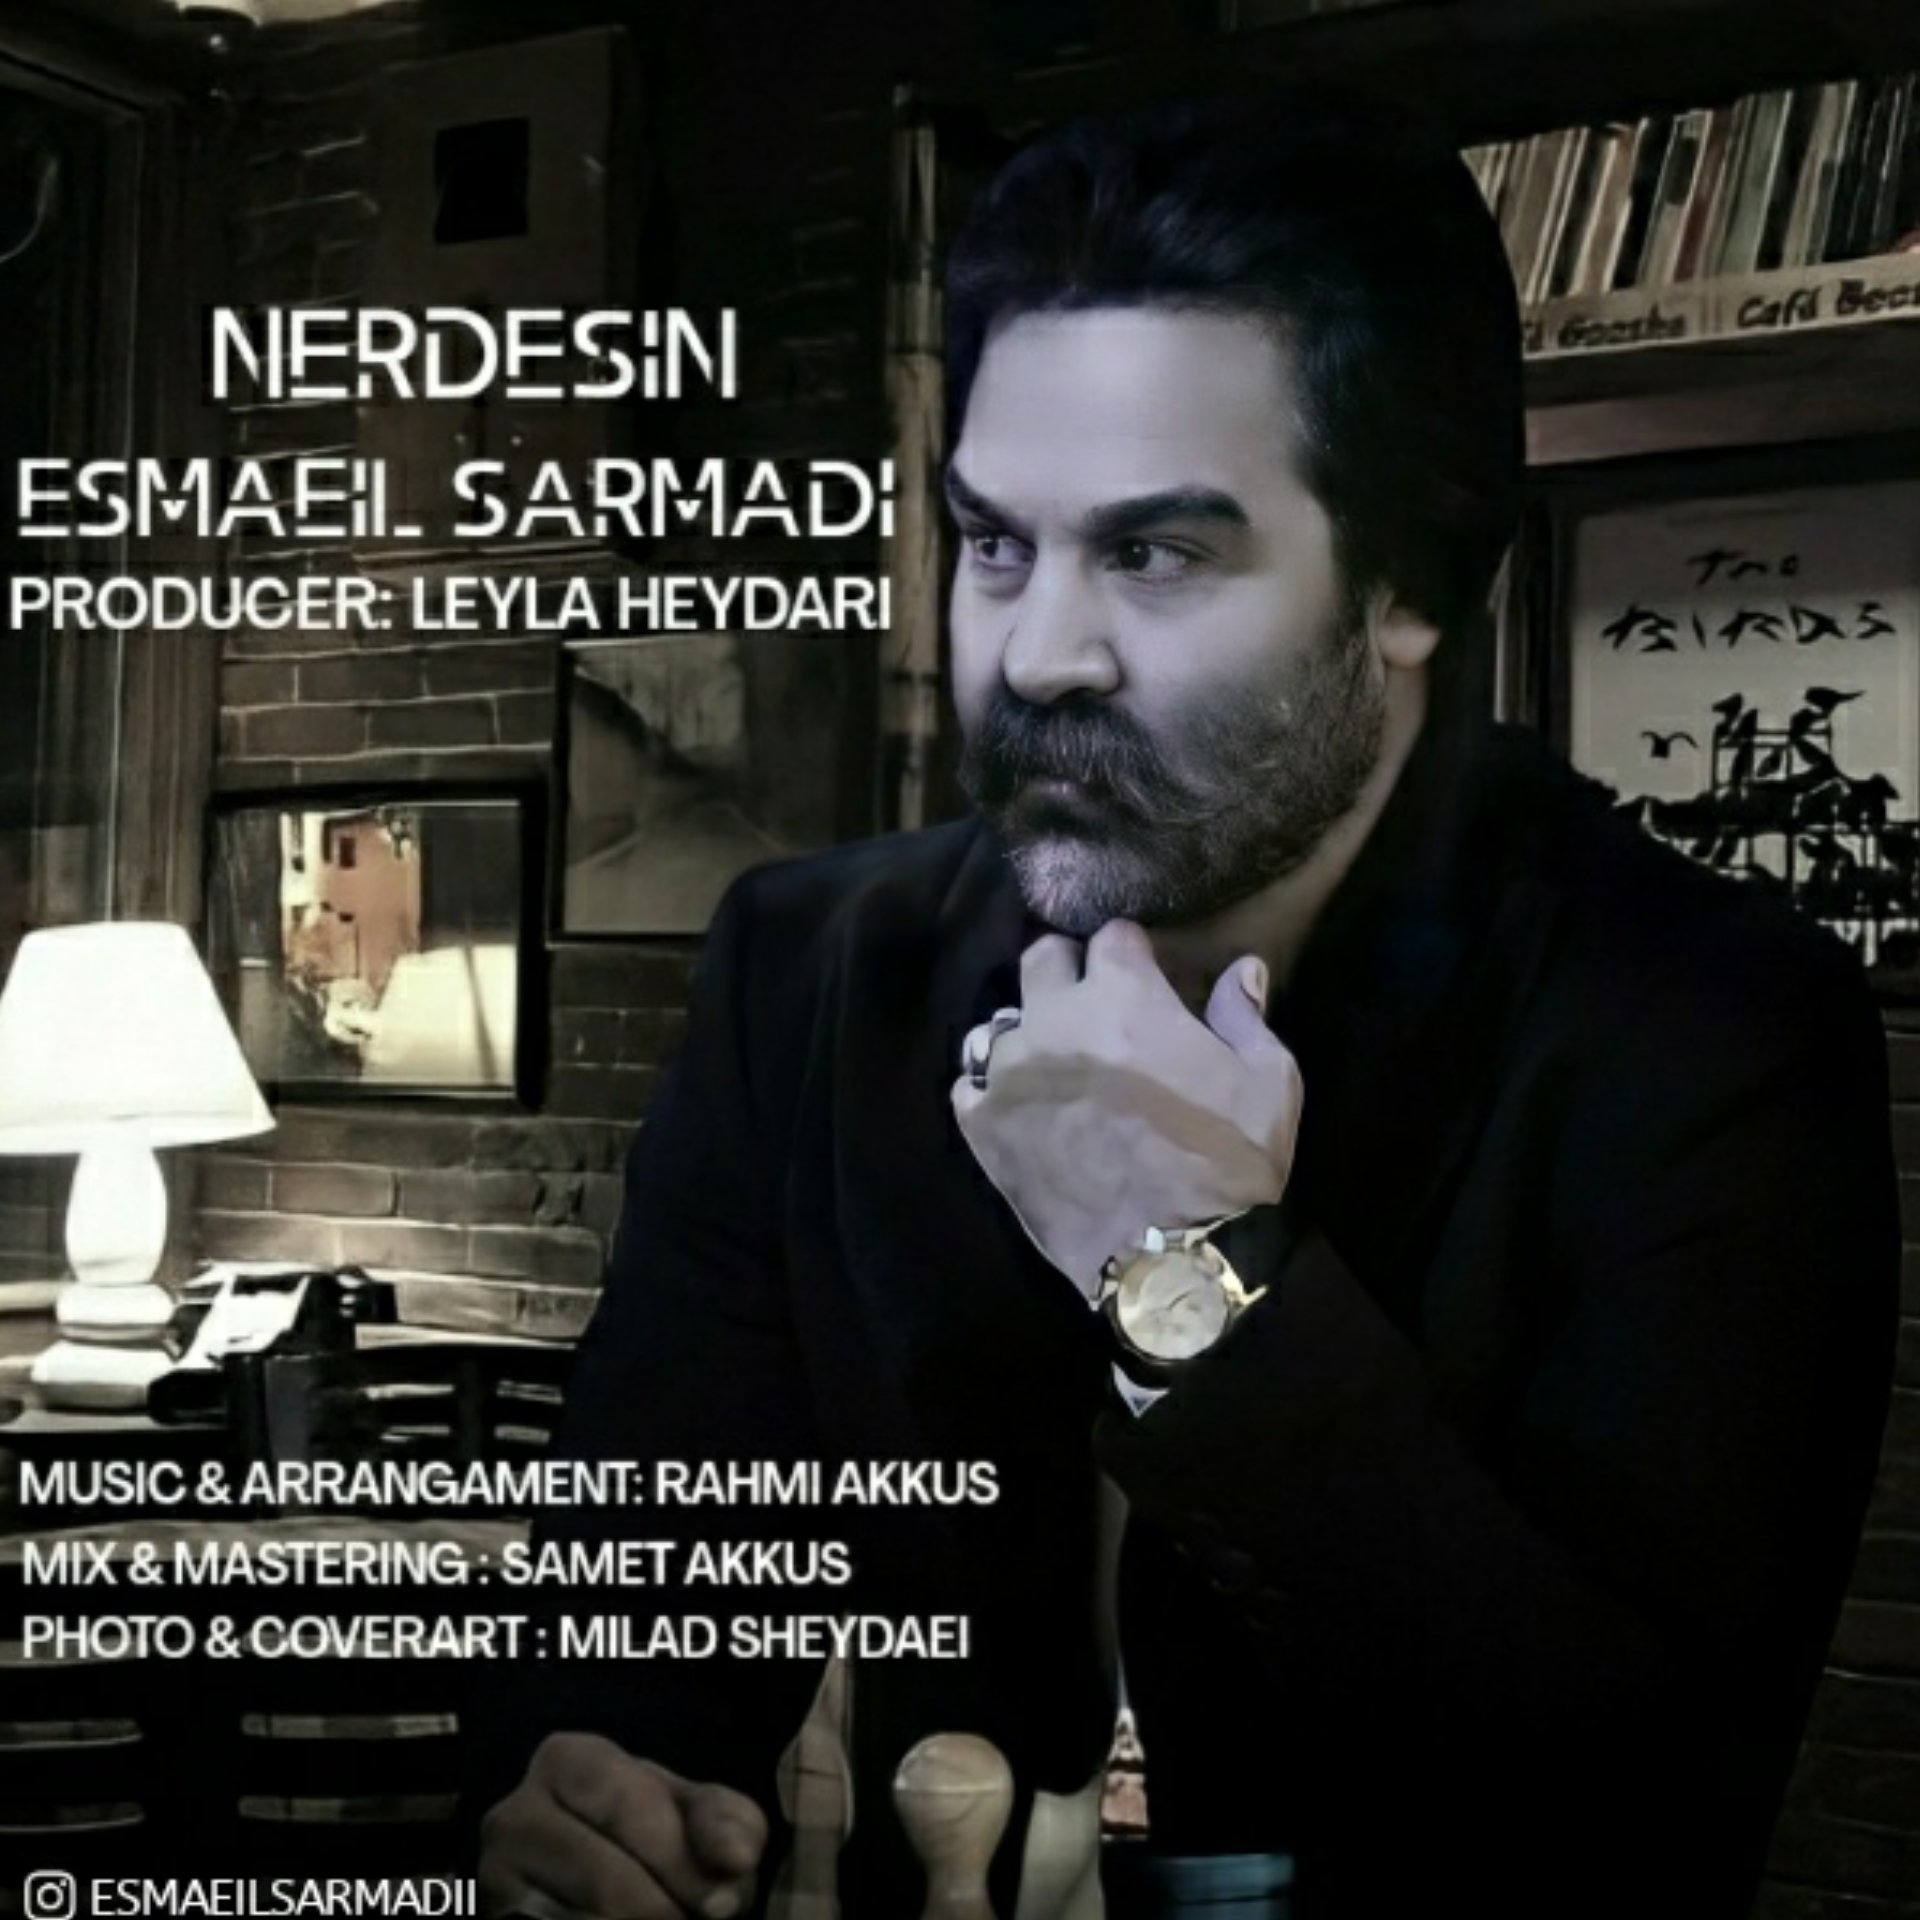  دانلود آهنگ جدید اسماعیل سرمدی - نردسین | Download New Music By Esmaeilsarmadii - Nerdesin